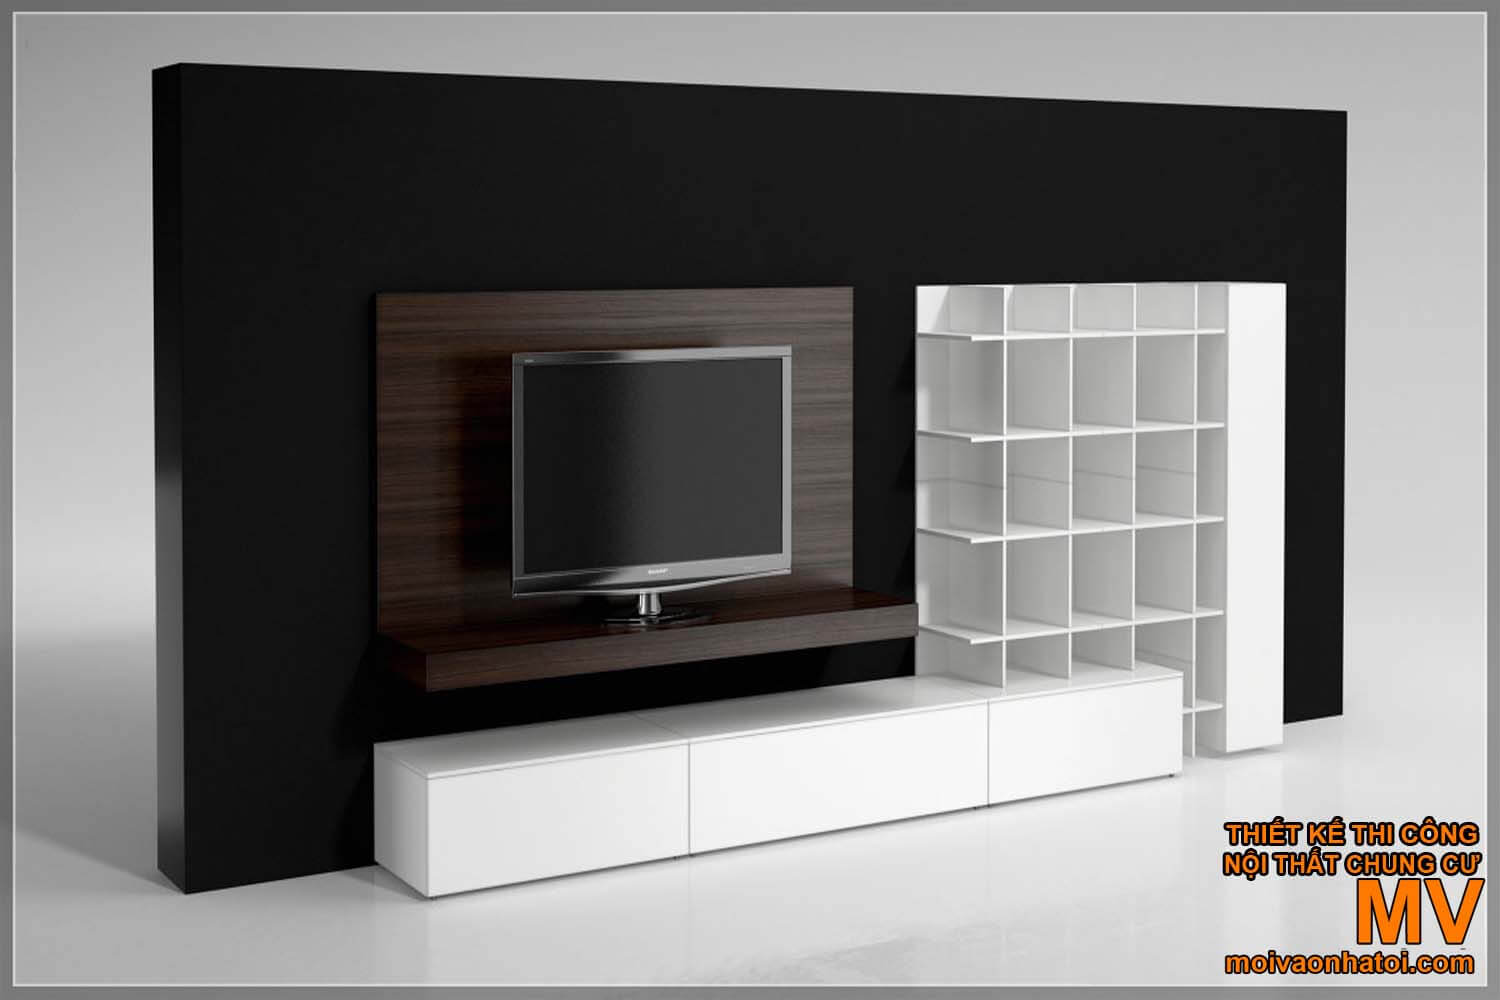 Beautiful wooden TV hanging shelf